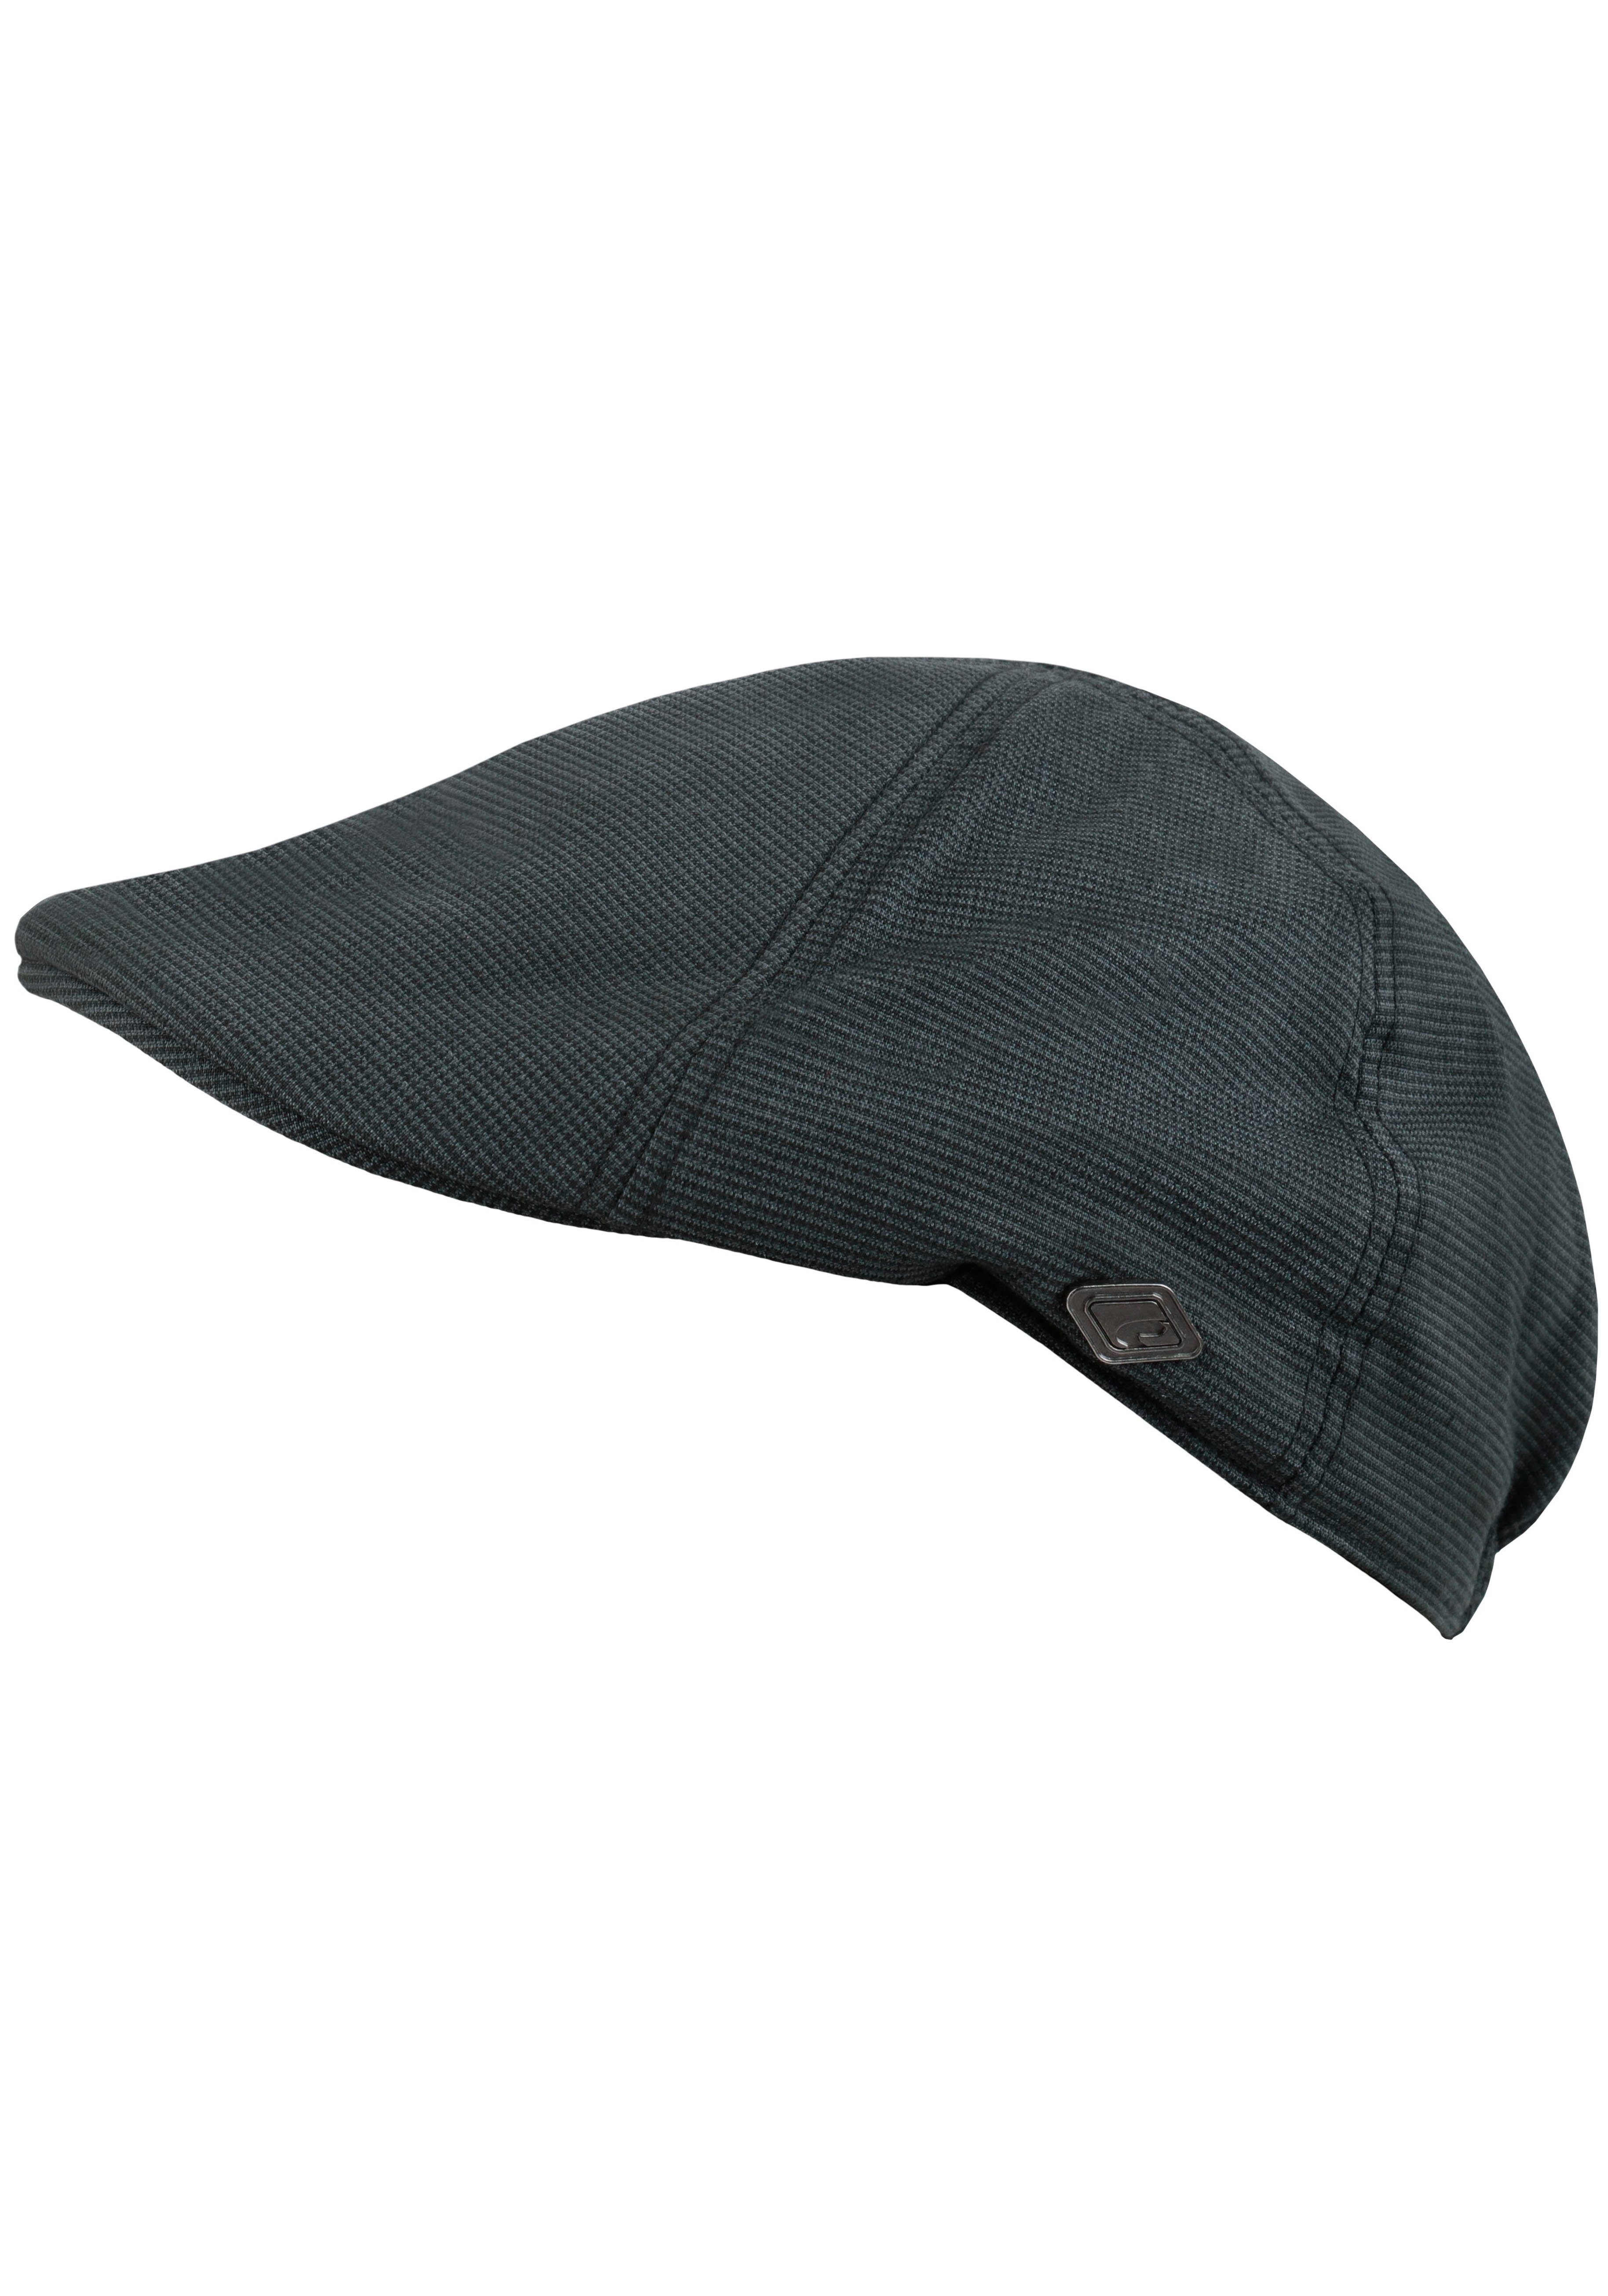 chillouts Schiebermütze Kyoto Hat Flat Cap mit feinem Karomuster grau-schwarz | Schiebermützen